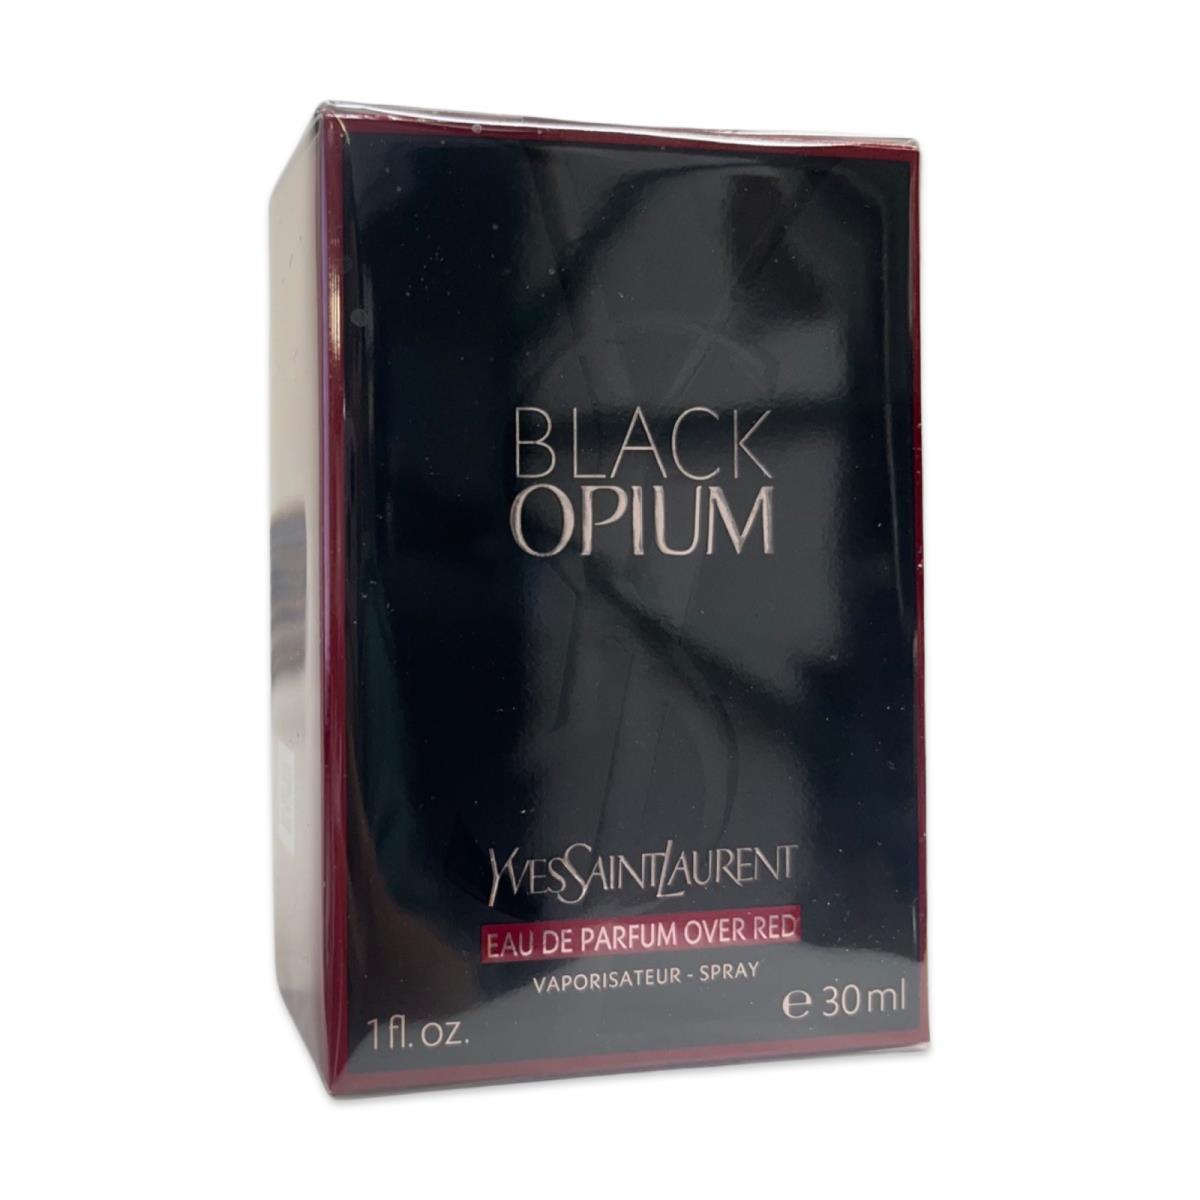 Yves Saint Laurent Ysl Black Opium Eau de Parfum Over Red 1oz